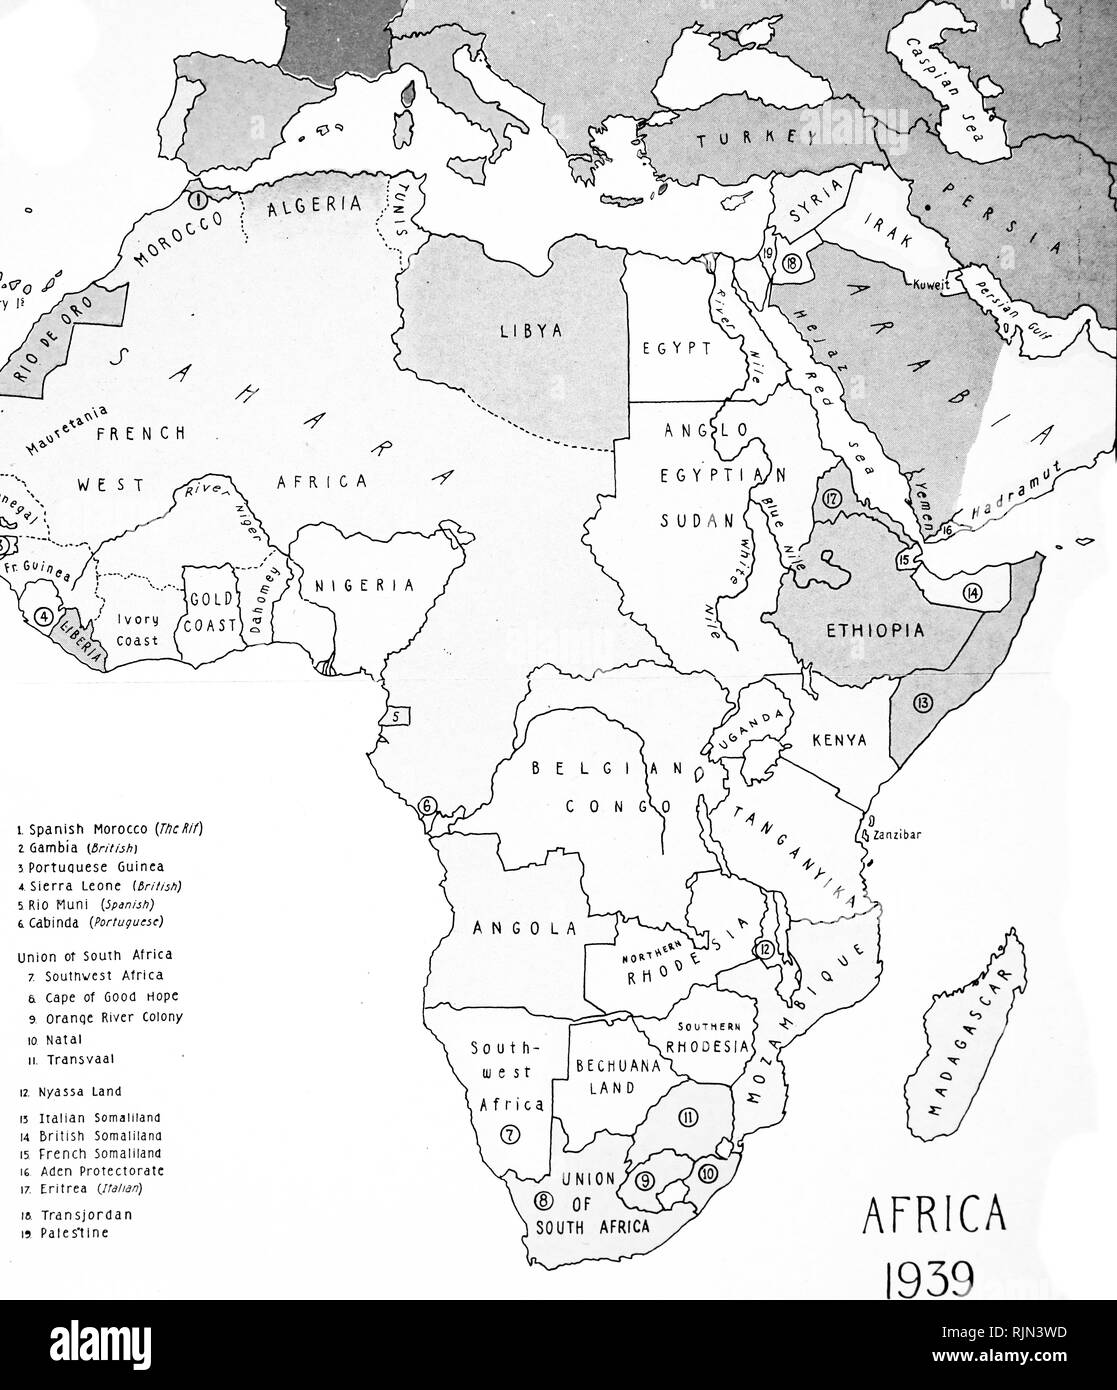 Illustration montrant la carte de l'Afrique, 1939 Banque D'Images